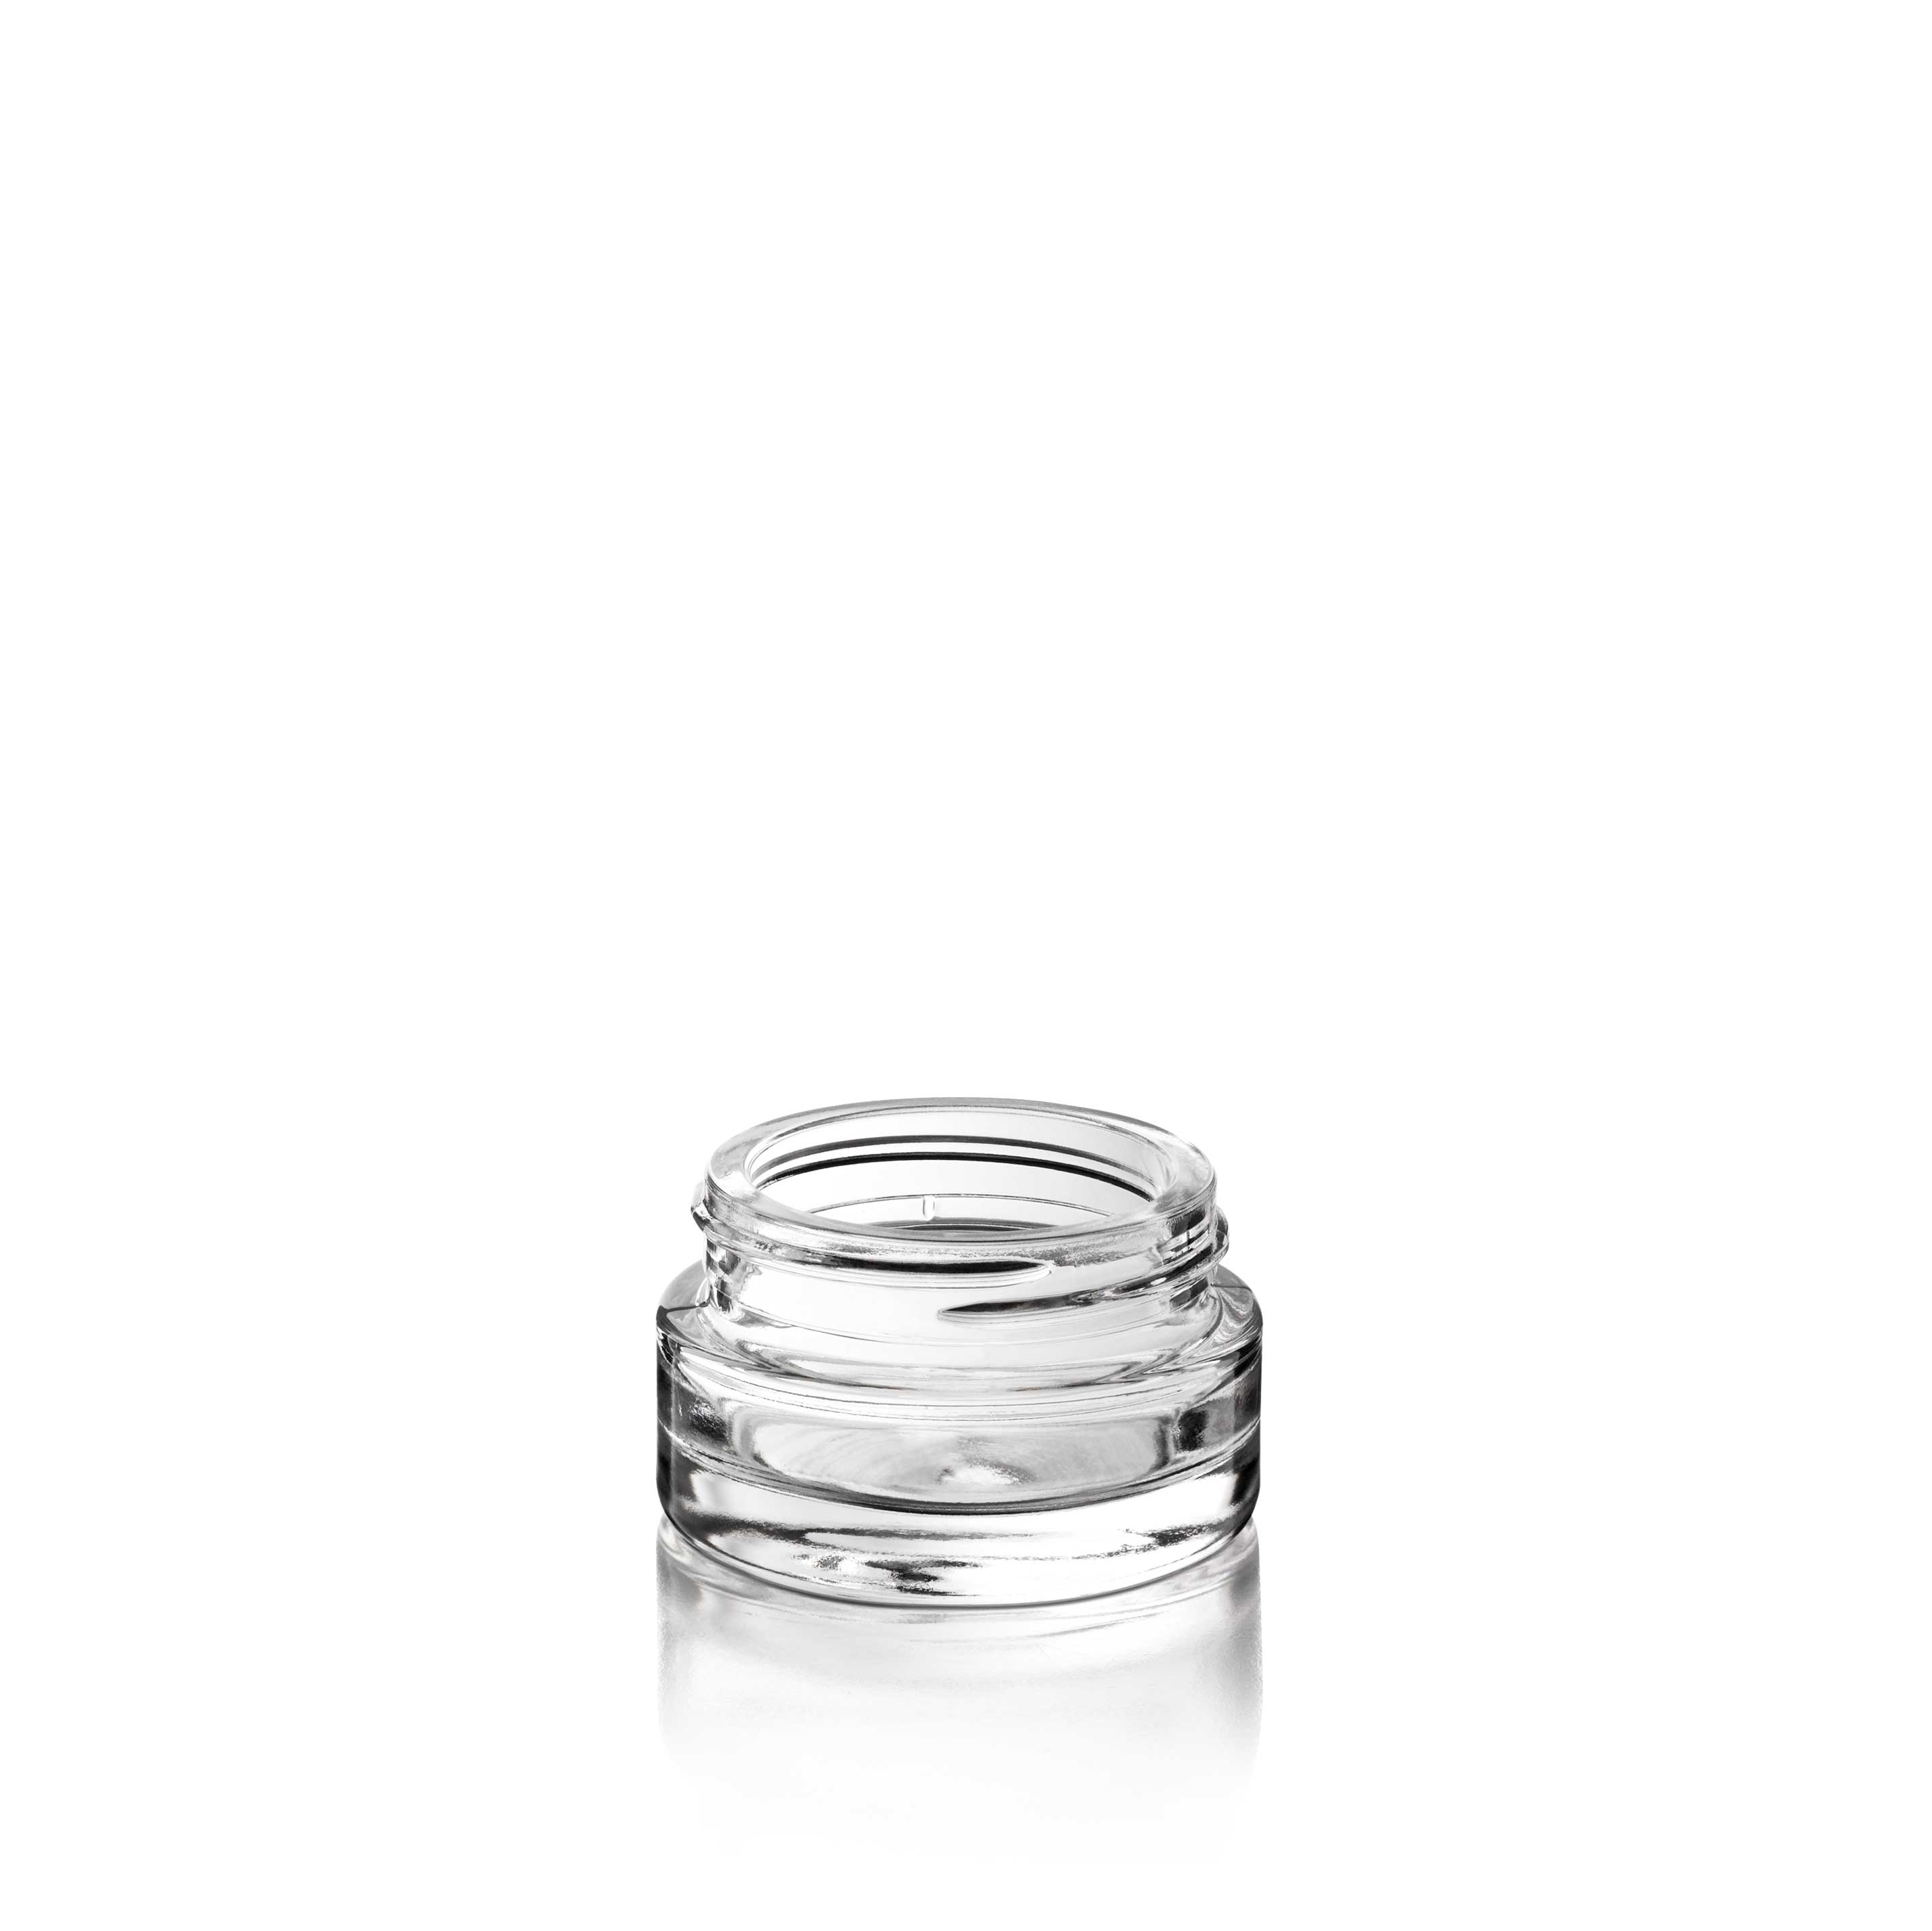 Cosmetic jar Bryn 15ml, 38 special thread, Flint